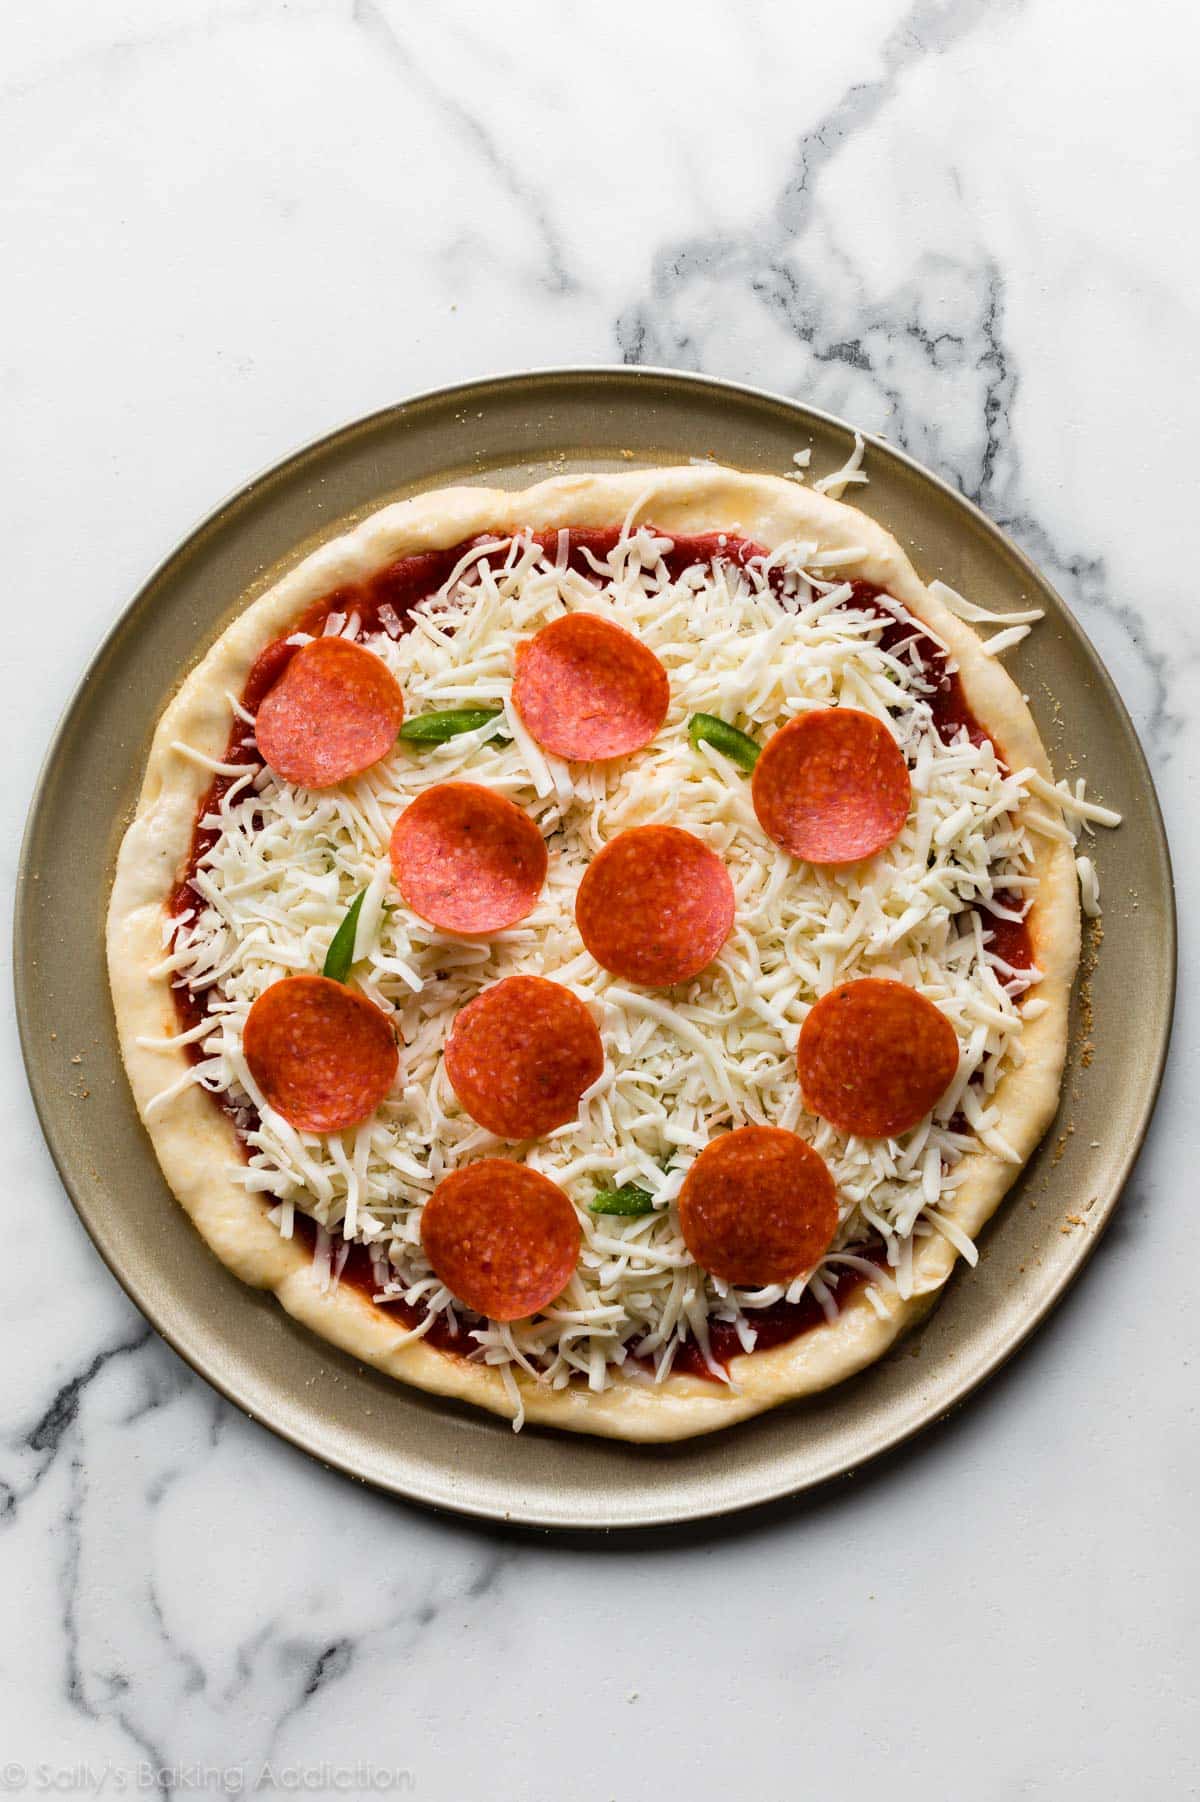 طريقة عمل عجينة البيتزا 